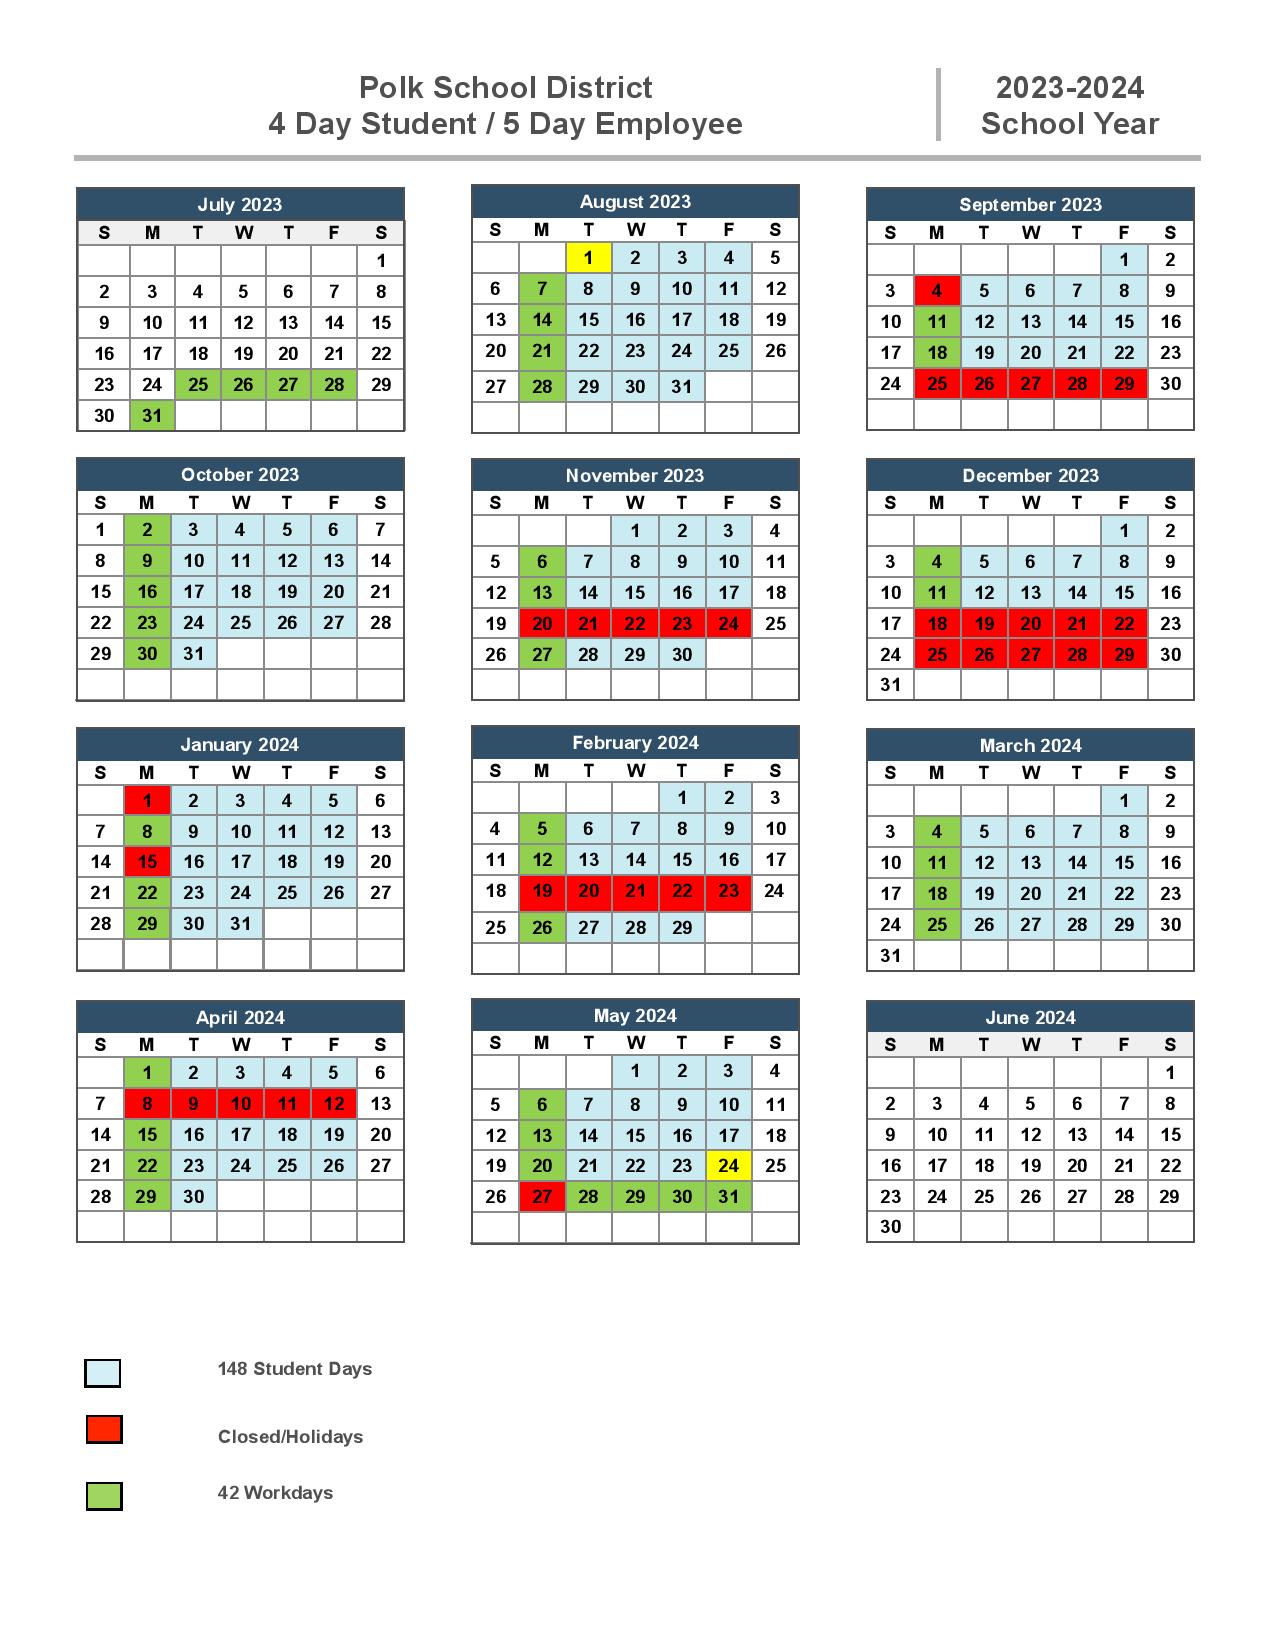 Polk County Schools Calendar 2023-2024 in PDF